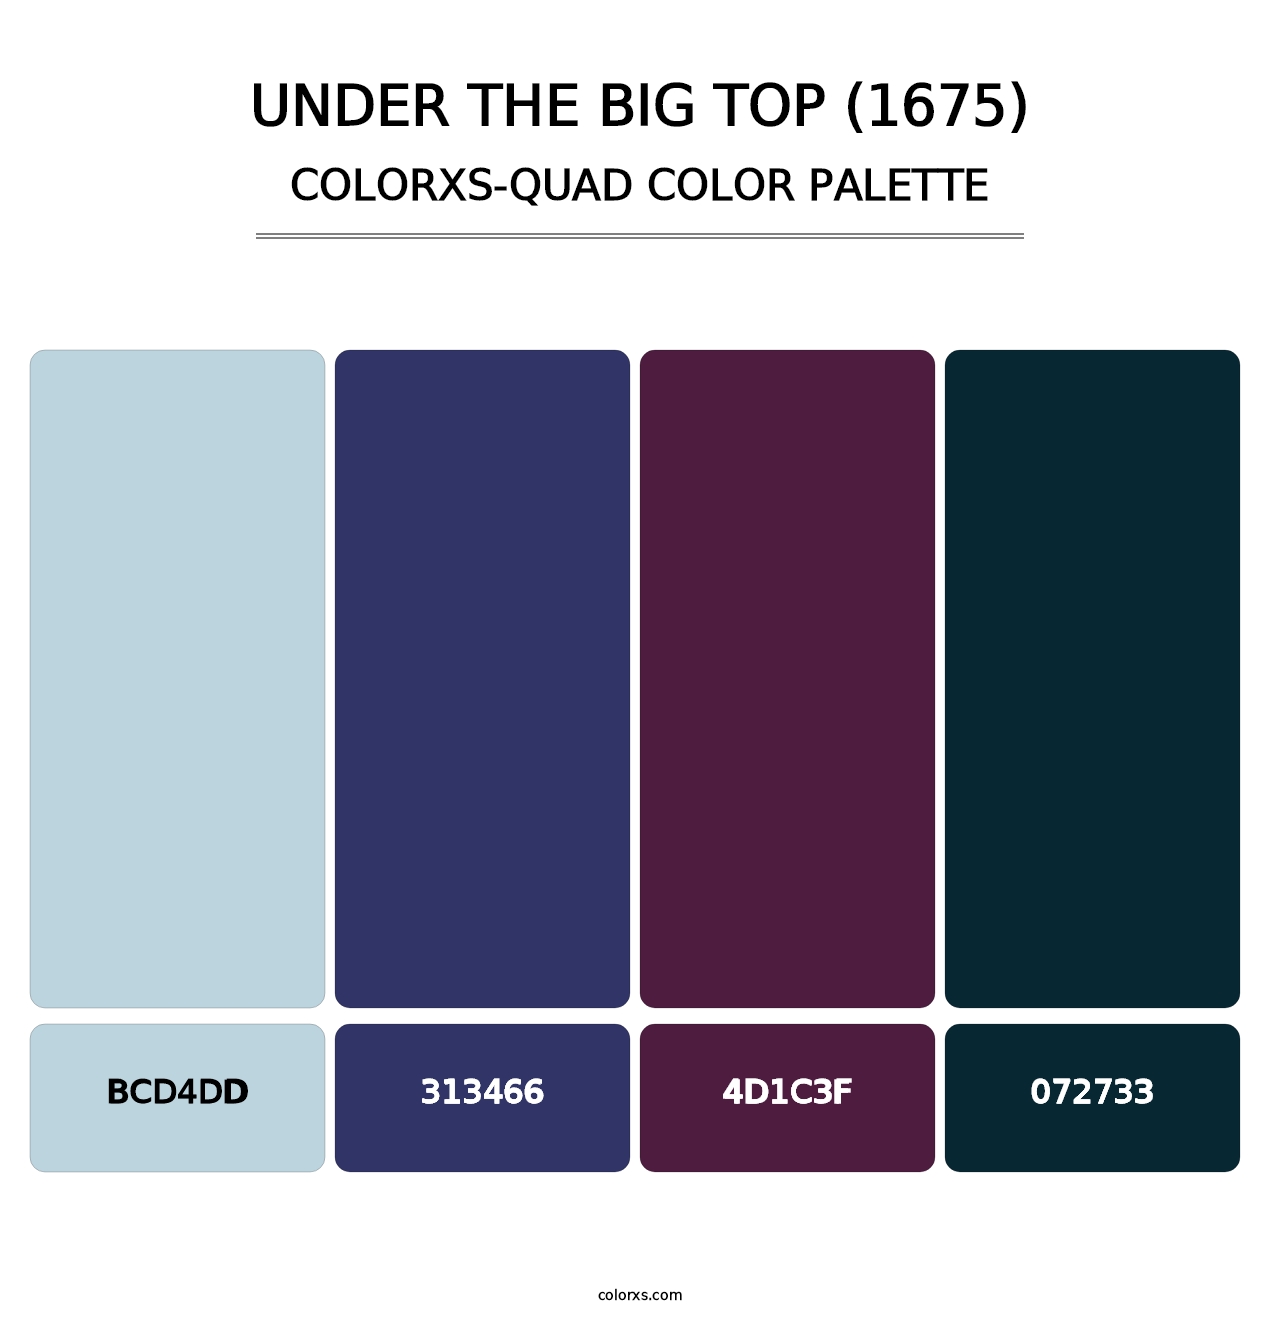 Under the Big Top (1675) - Colorxs Quad Palette